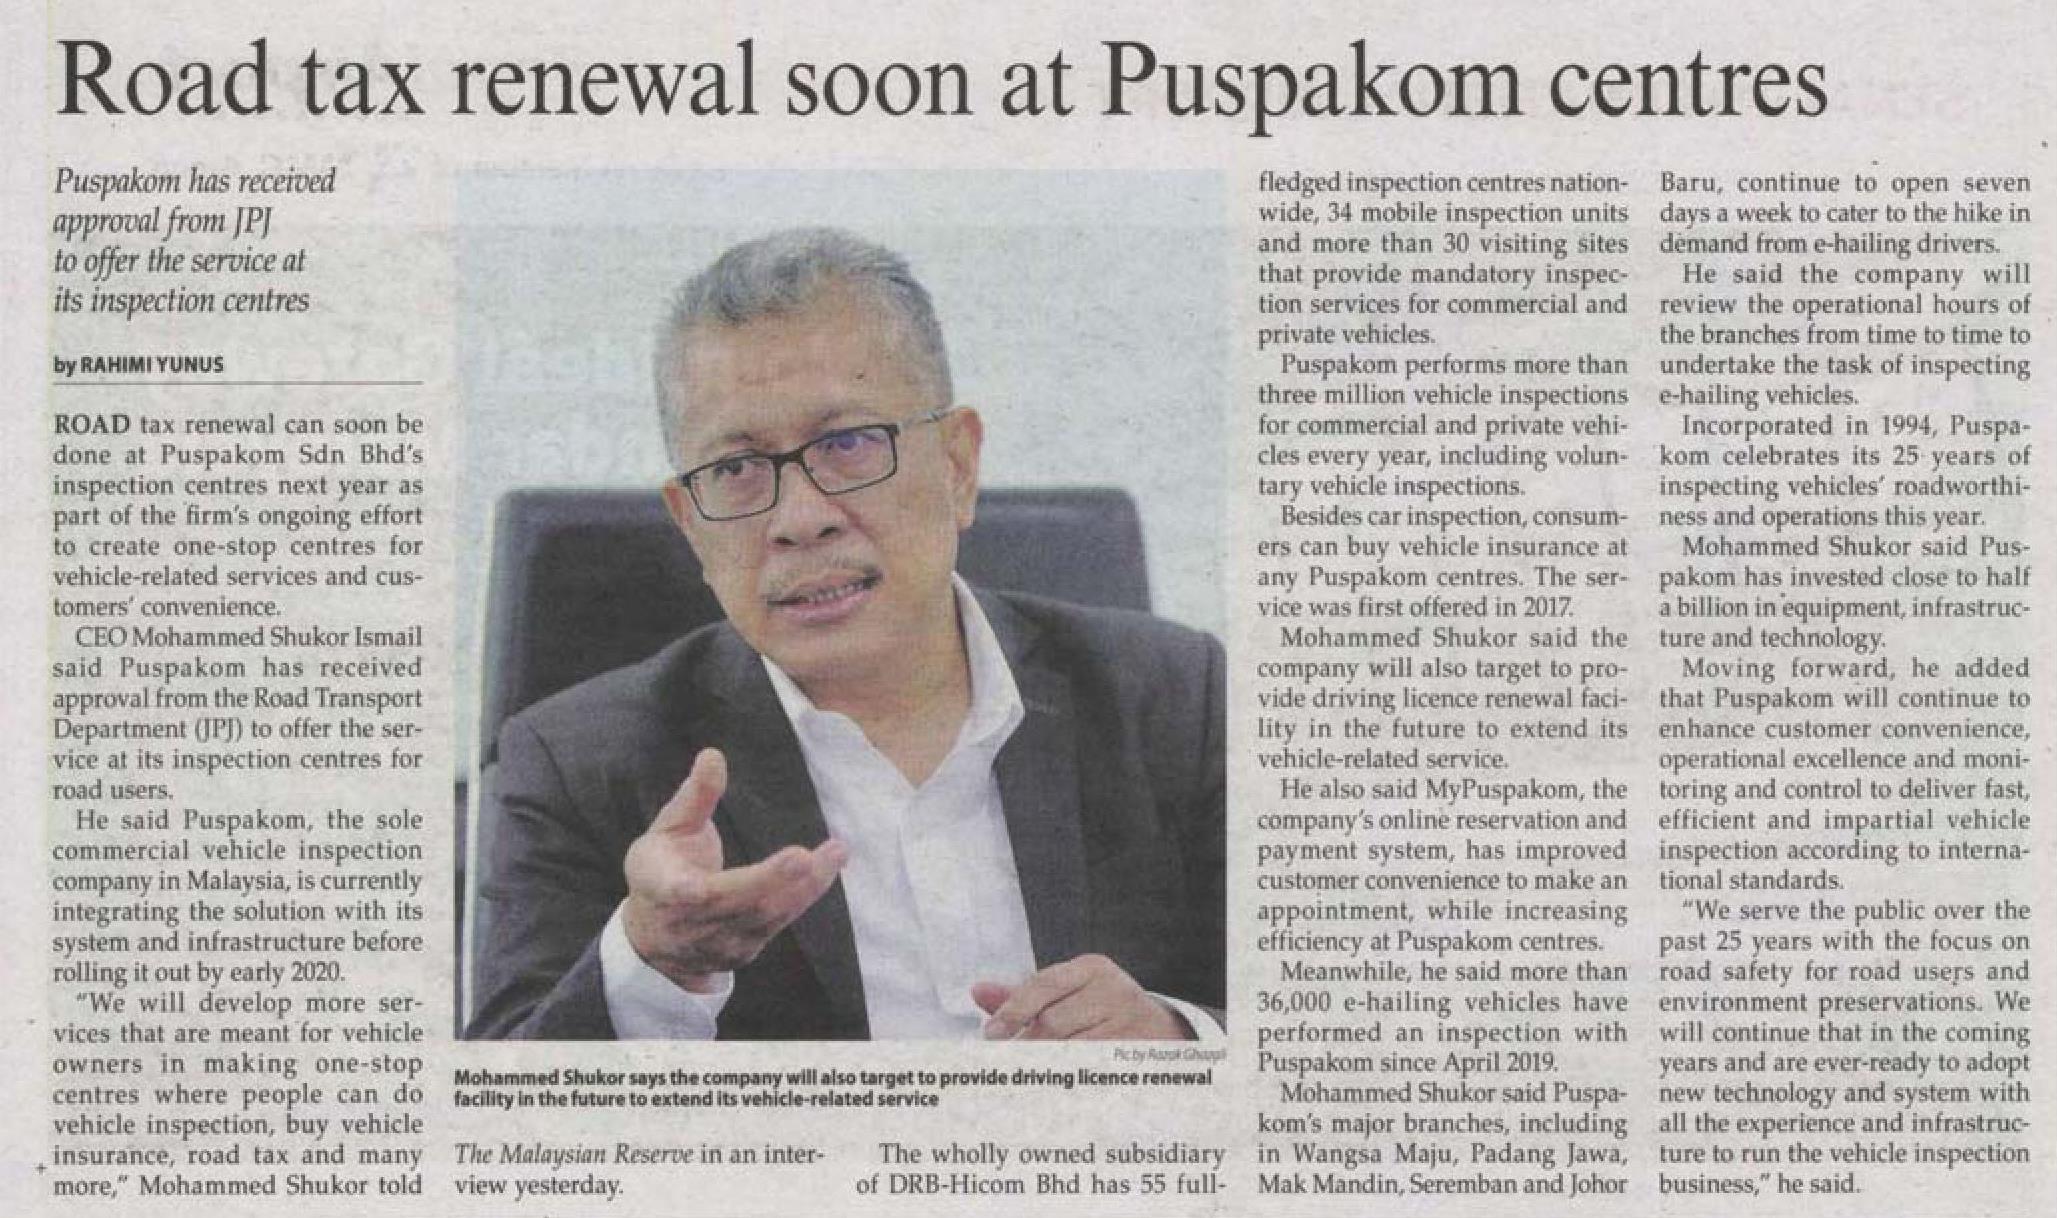 The Malaysian Reserve_11.12_Road tax renewal soon at Puspakom centres